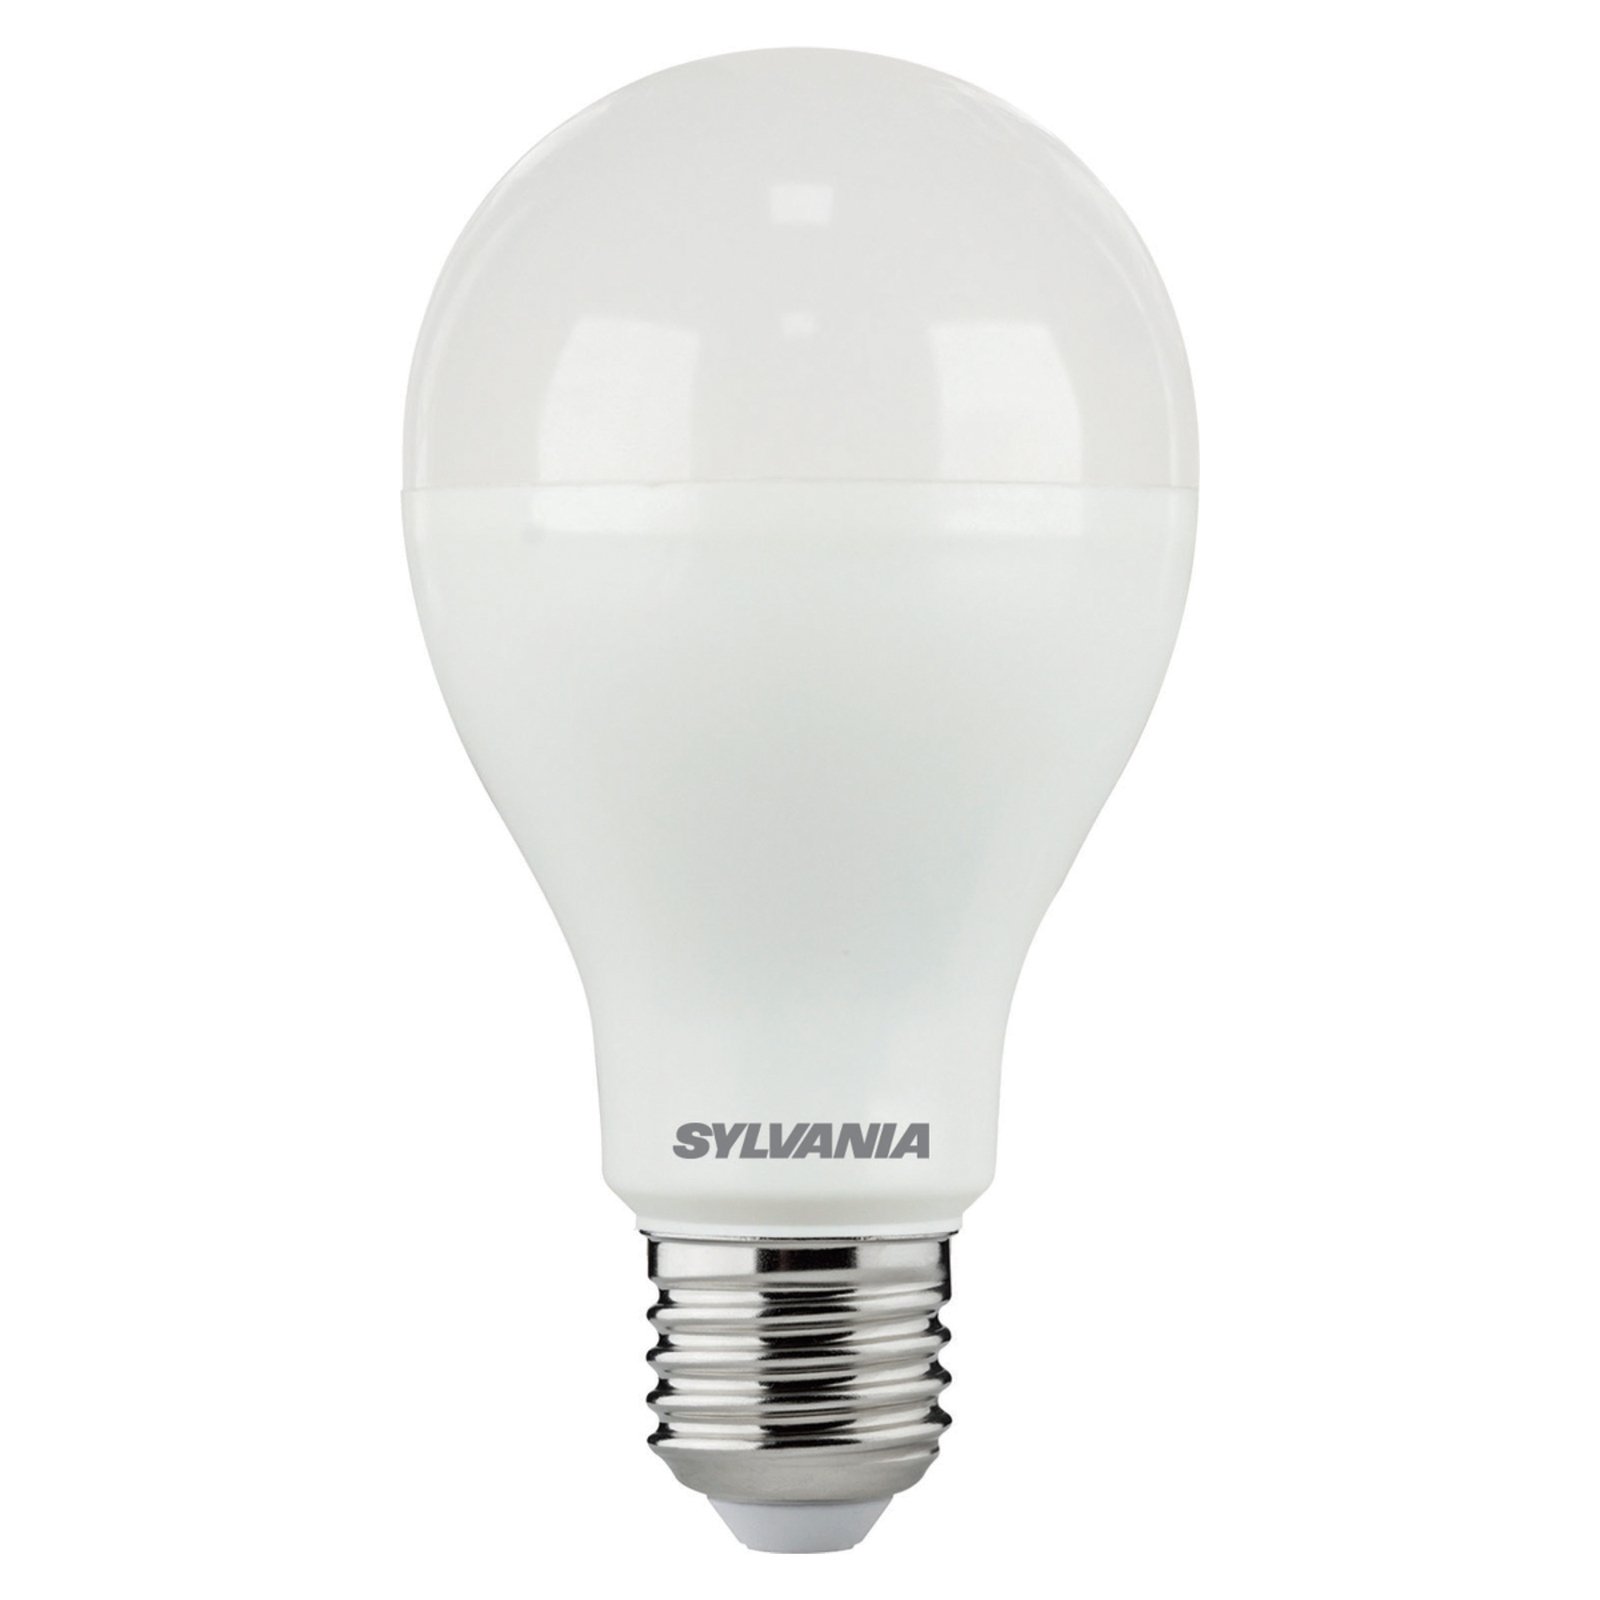 Sylvania LED lamp ToLEDo, E27, 20 W, opaal, 6.500 K